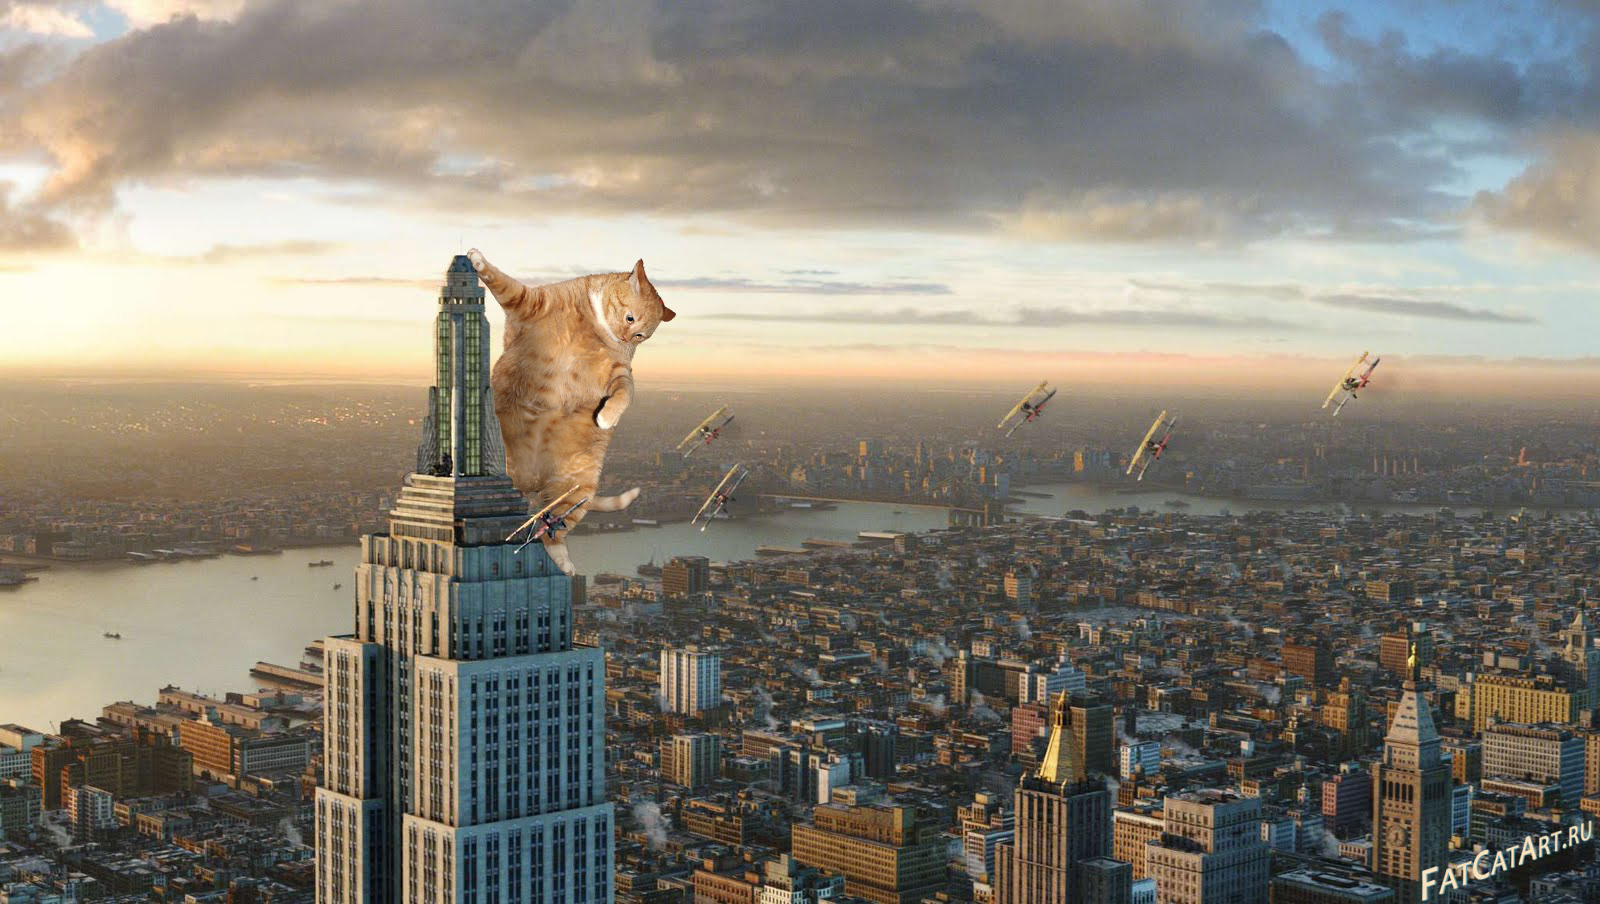 http://fatcatart.ru/wp-content/uploads/2014/03/King-Kong-2005-cat-w.jpg